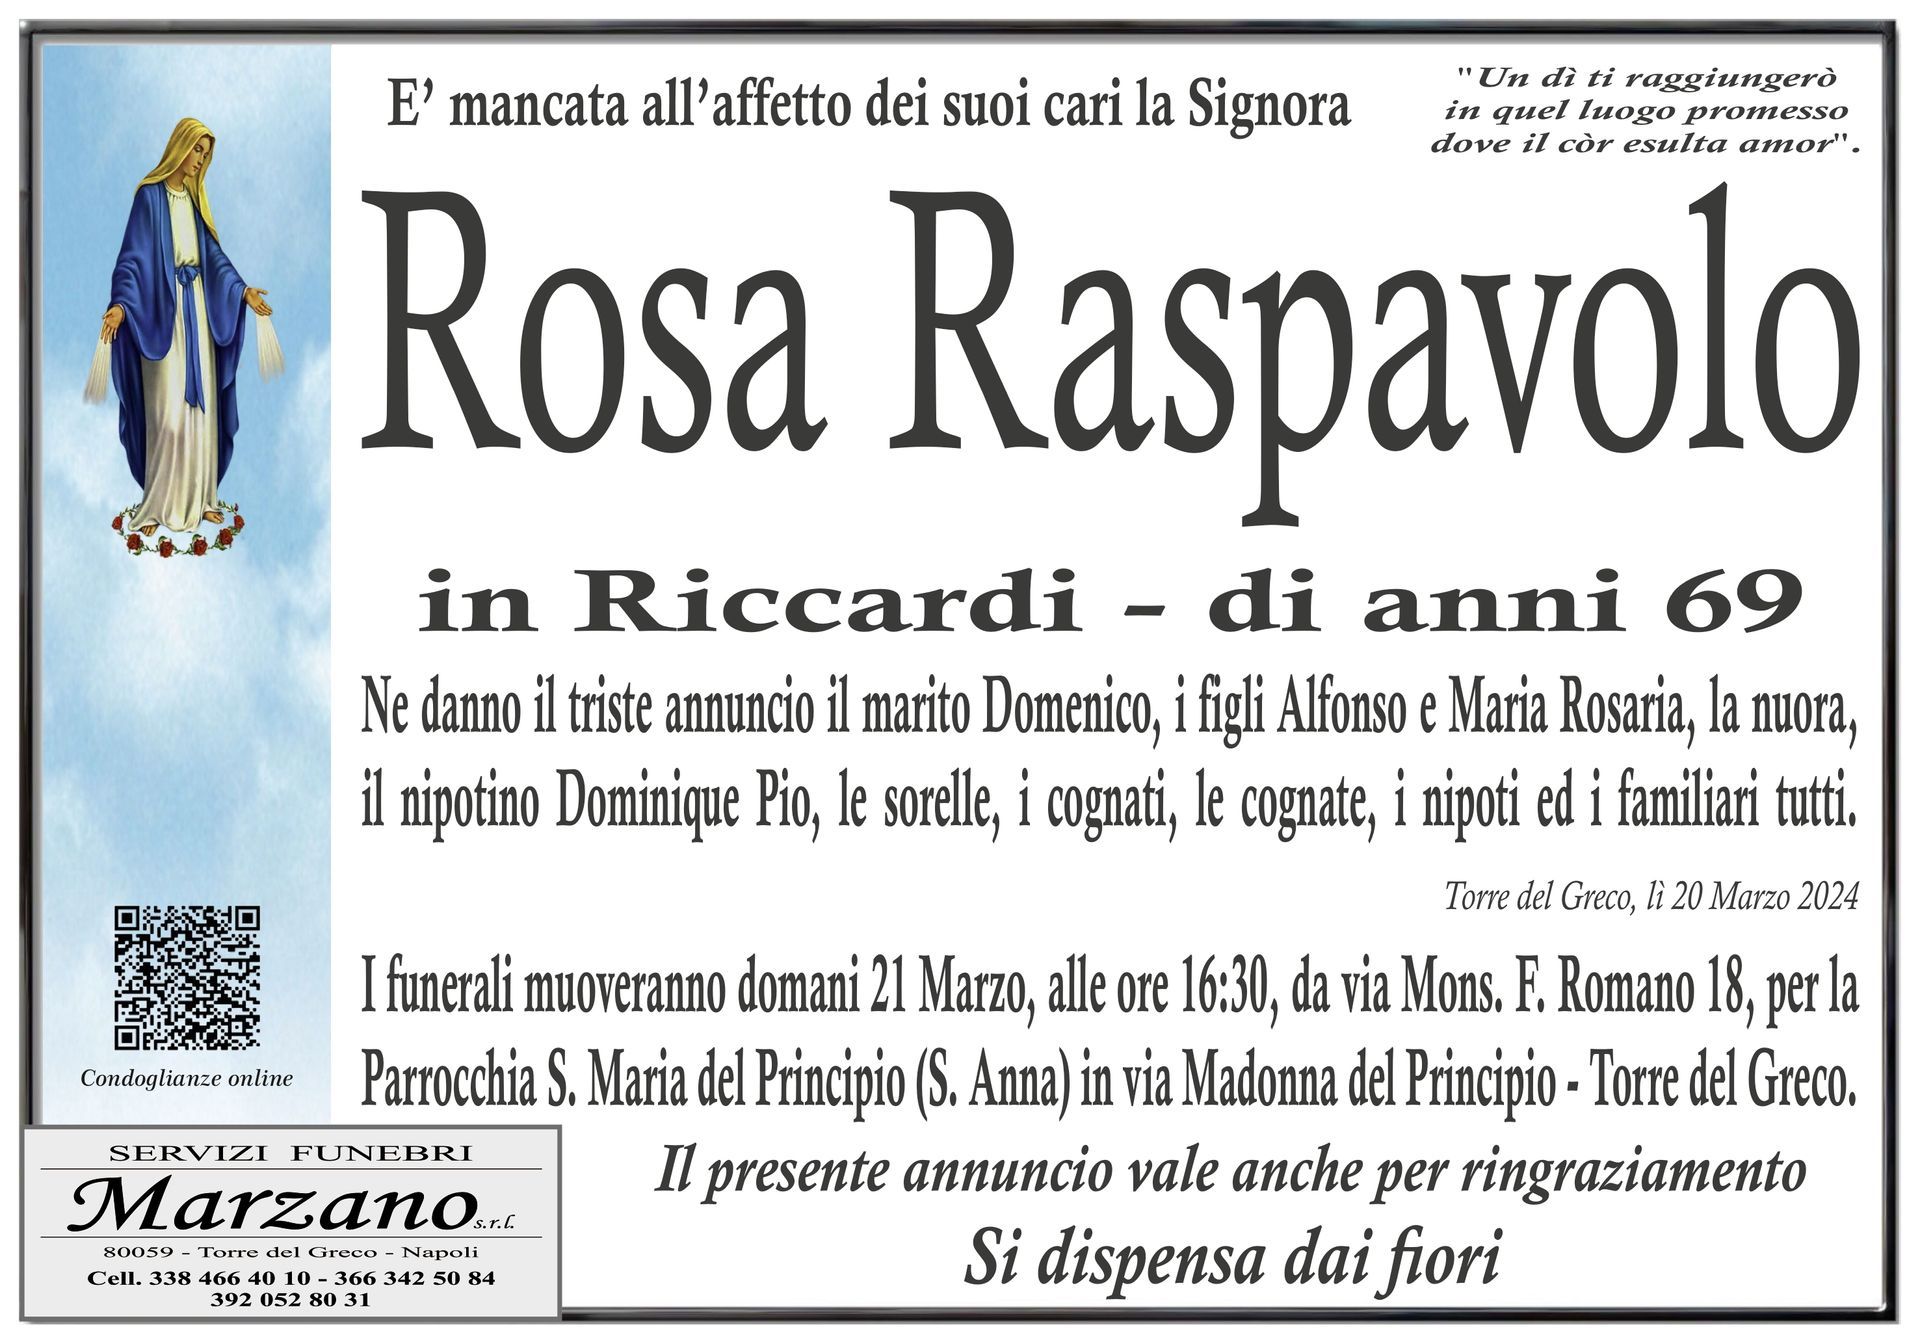 Rosa Raspavolo